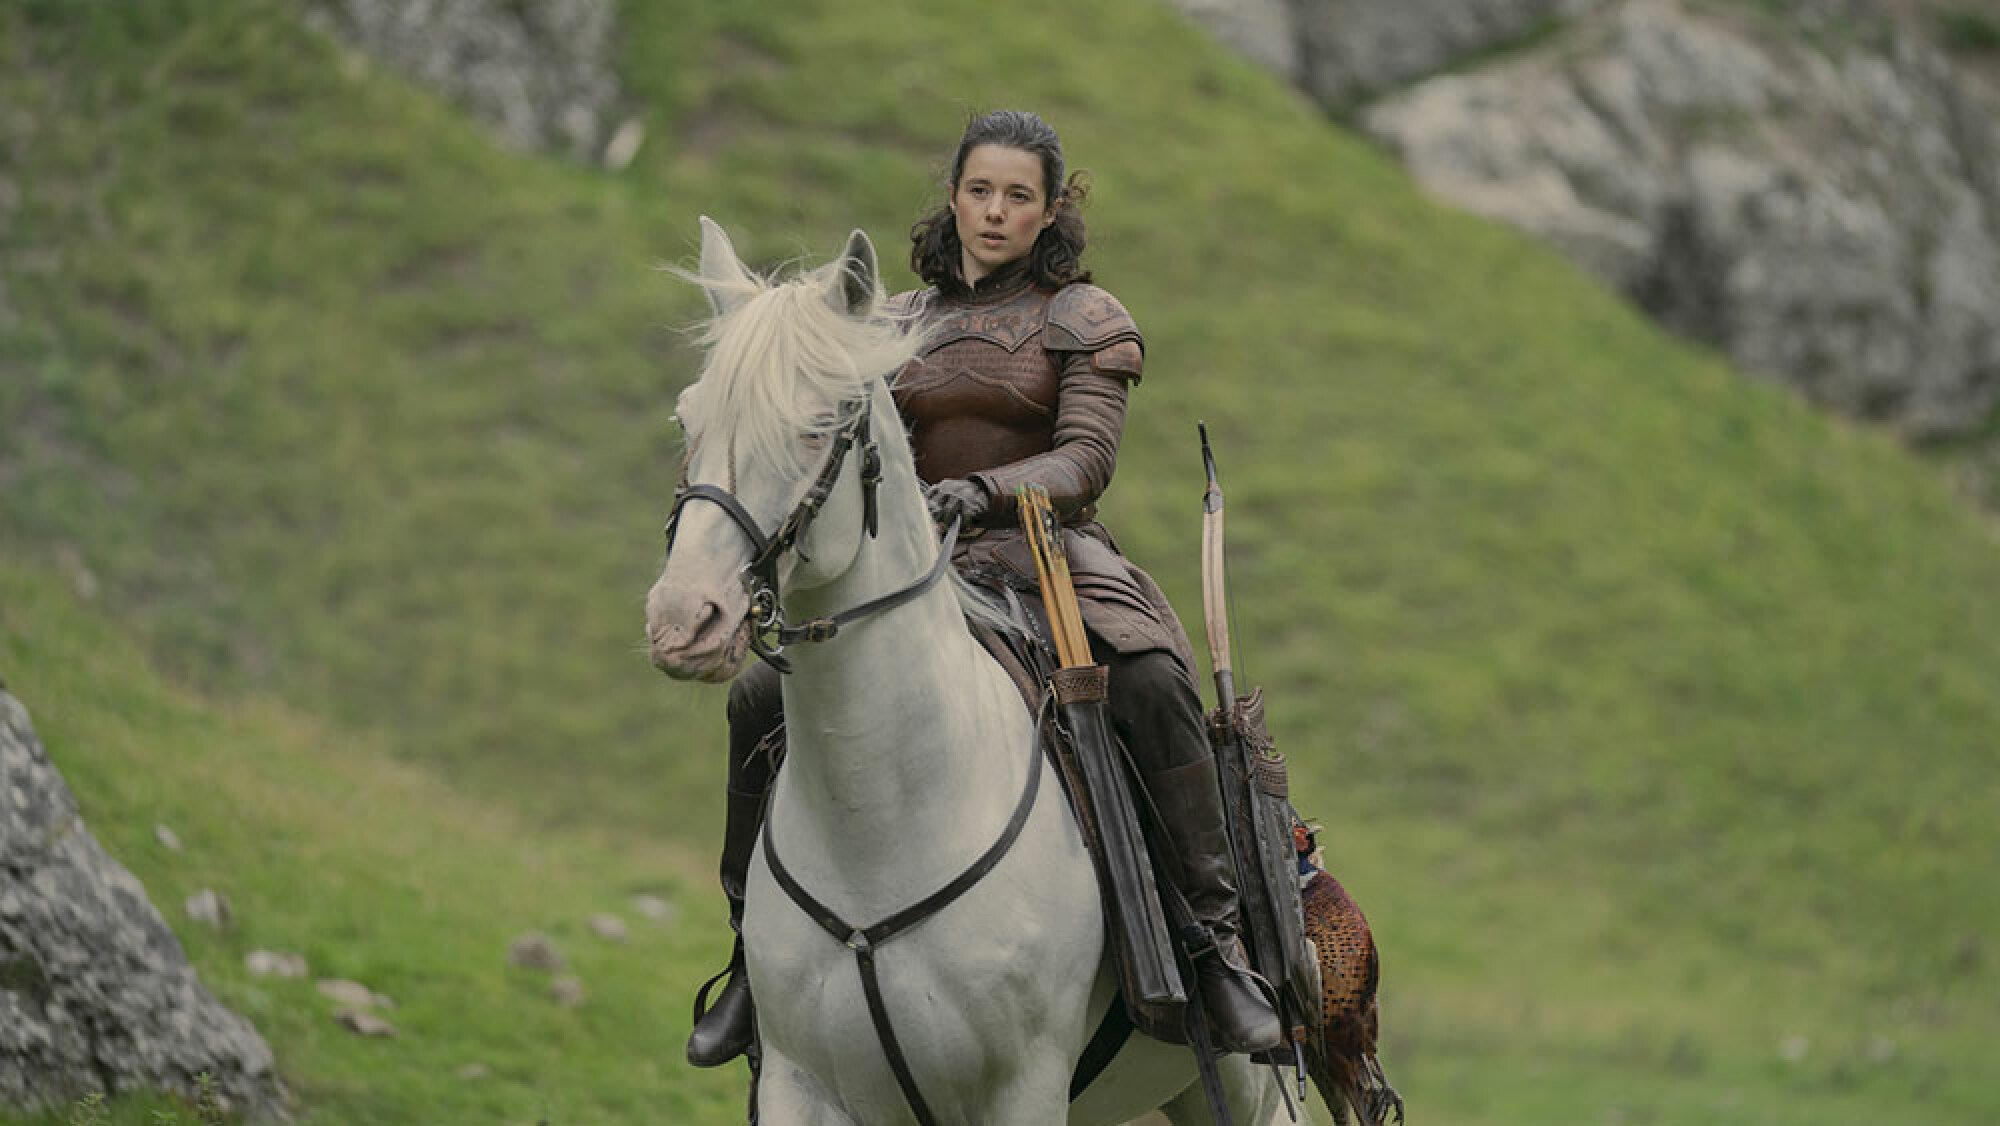 Une femme vêtue de vêtements médiévaux monte un cheval blanc à l'extérieur.